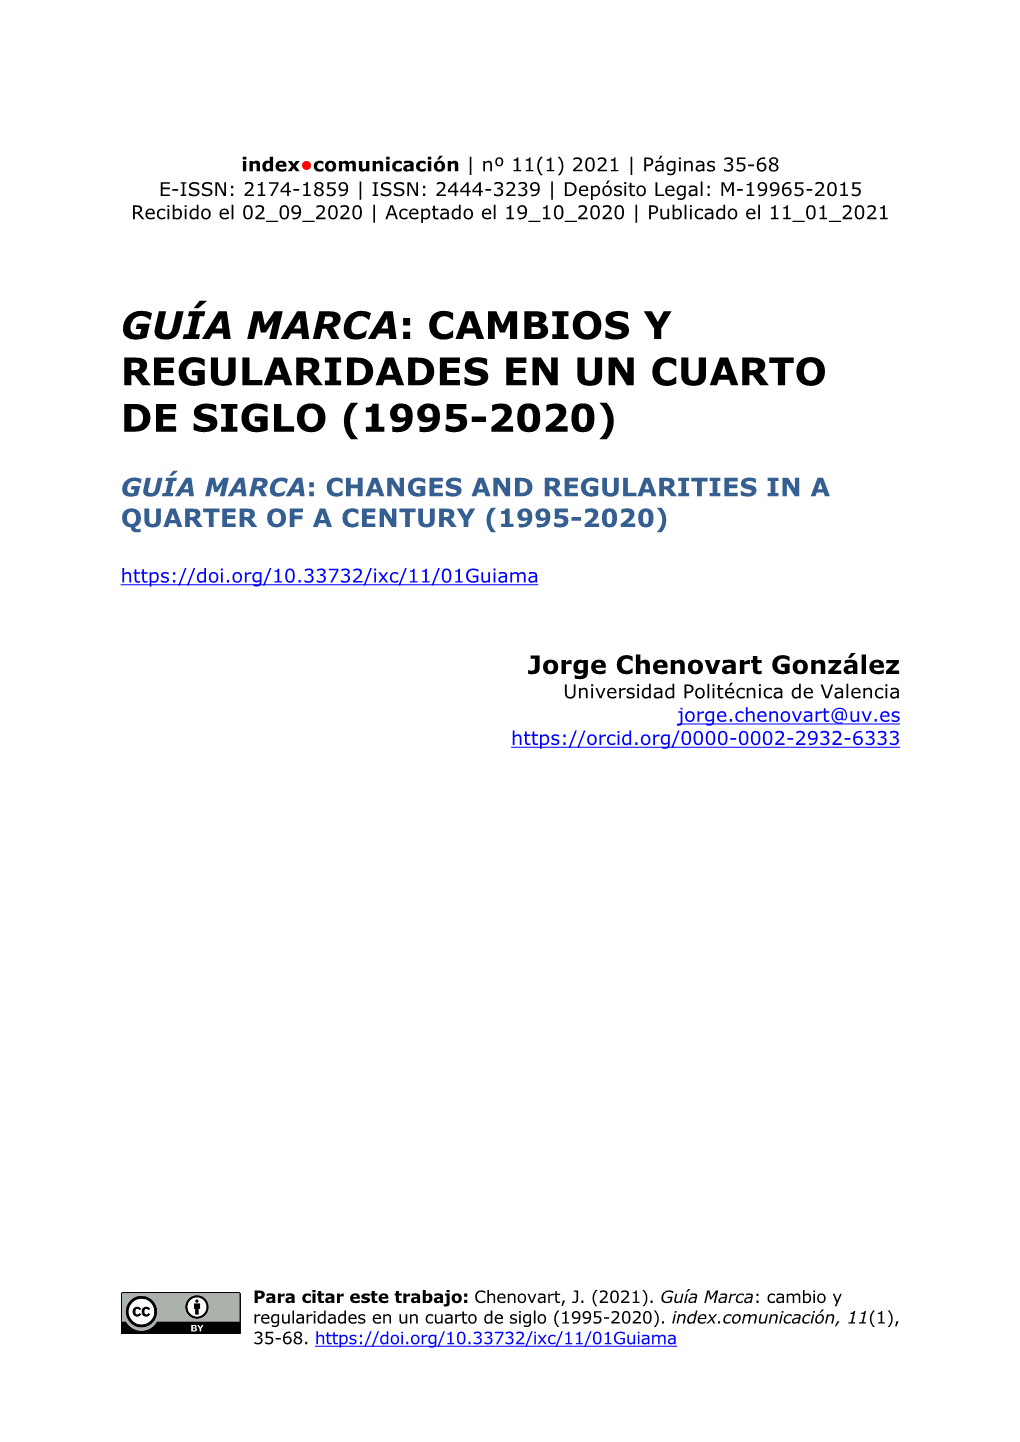 Cambios Y Regularidades En Un Cuarto De Siglo (1995-2020)